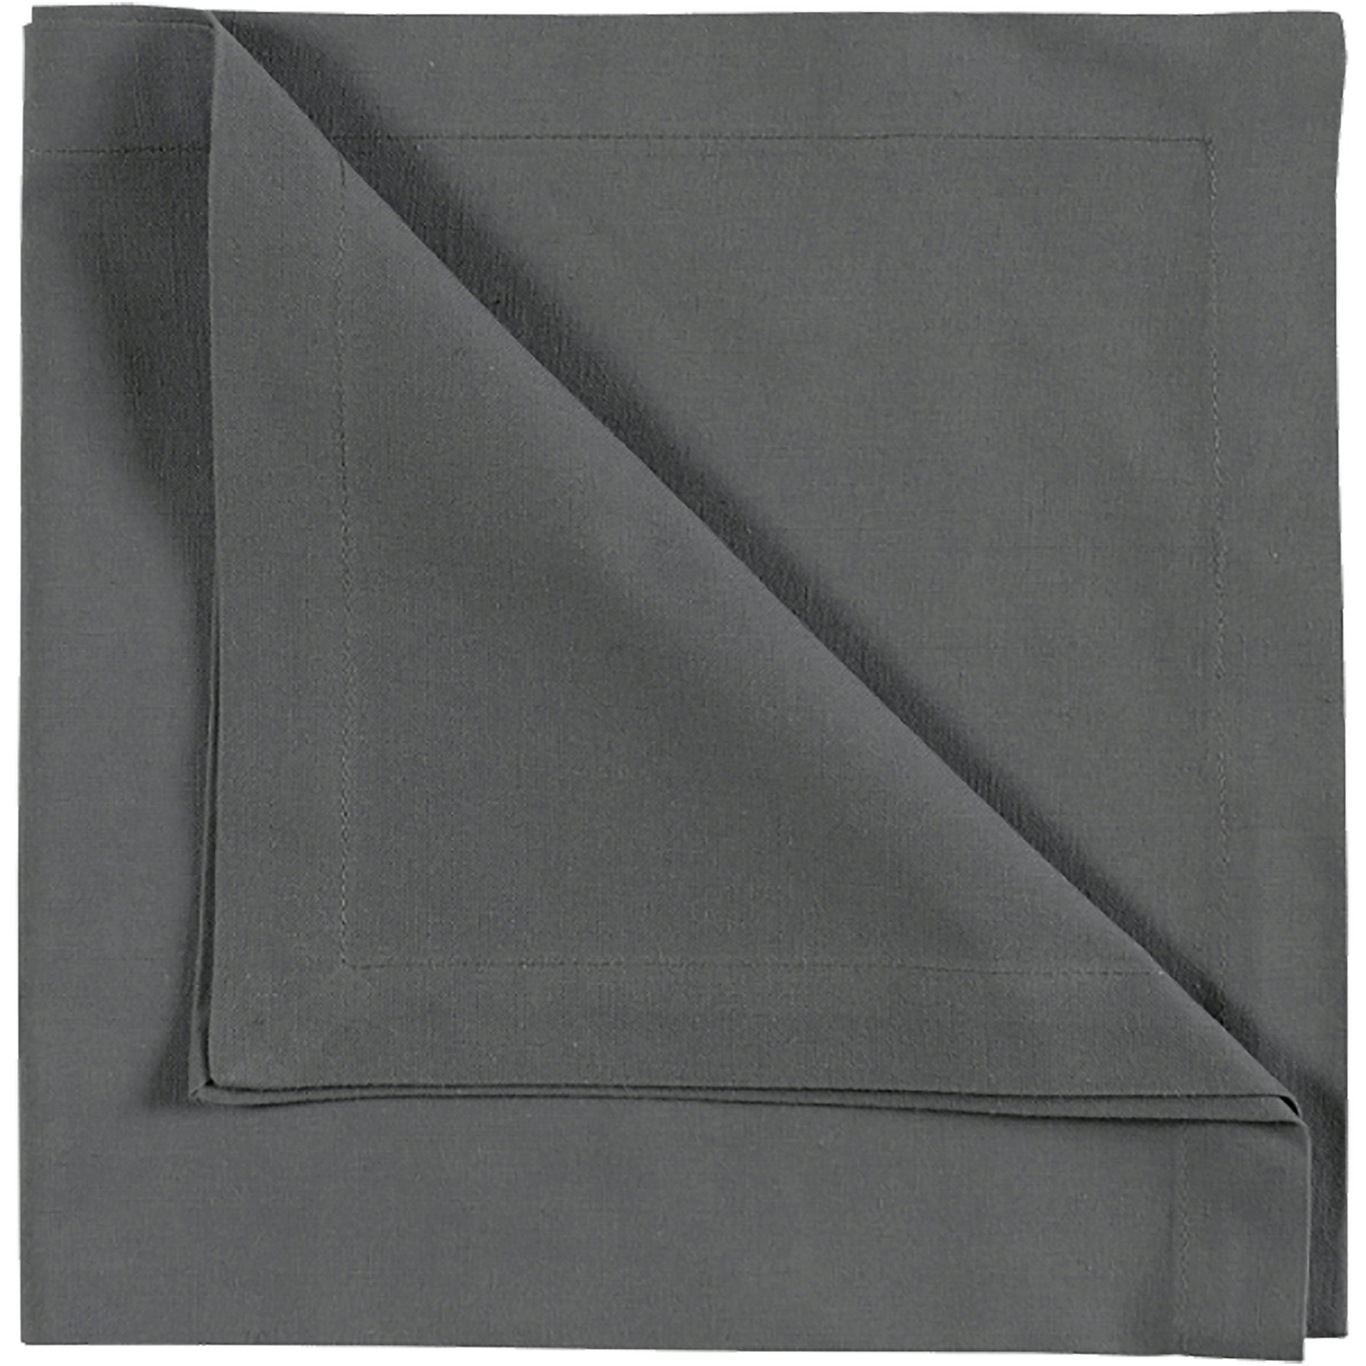 Robert Napkin 45x45 cm 4-pack, Granite Grey